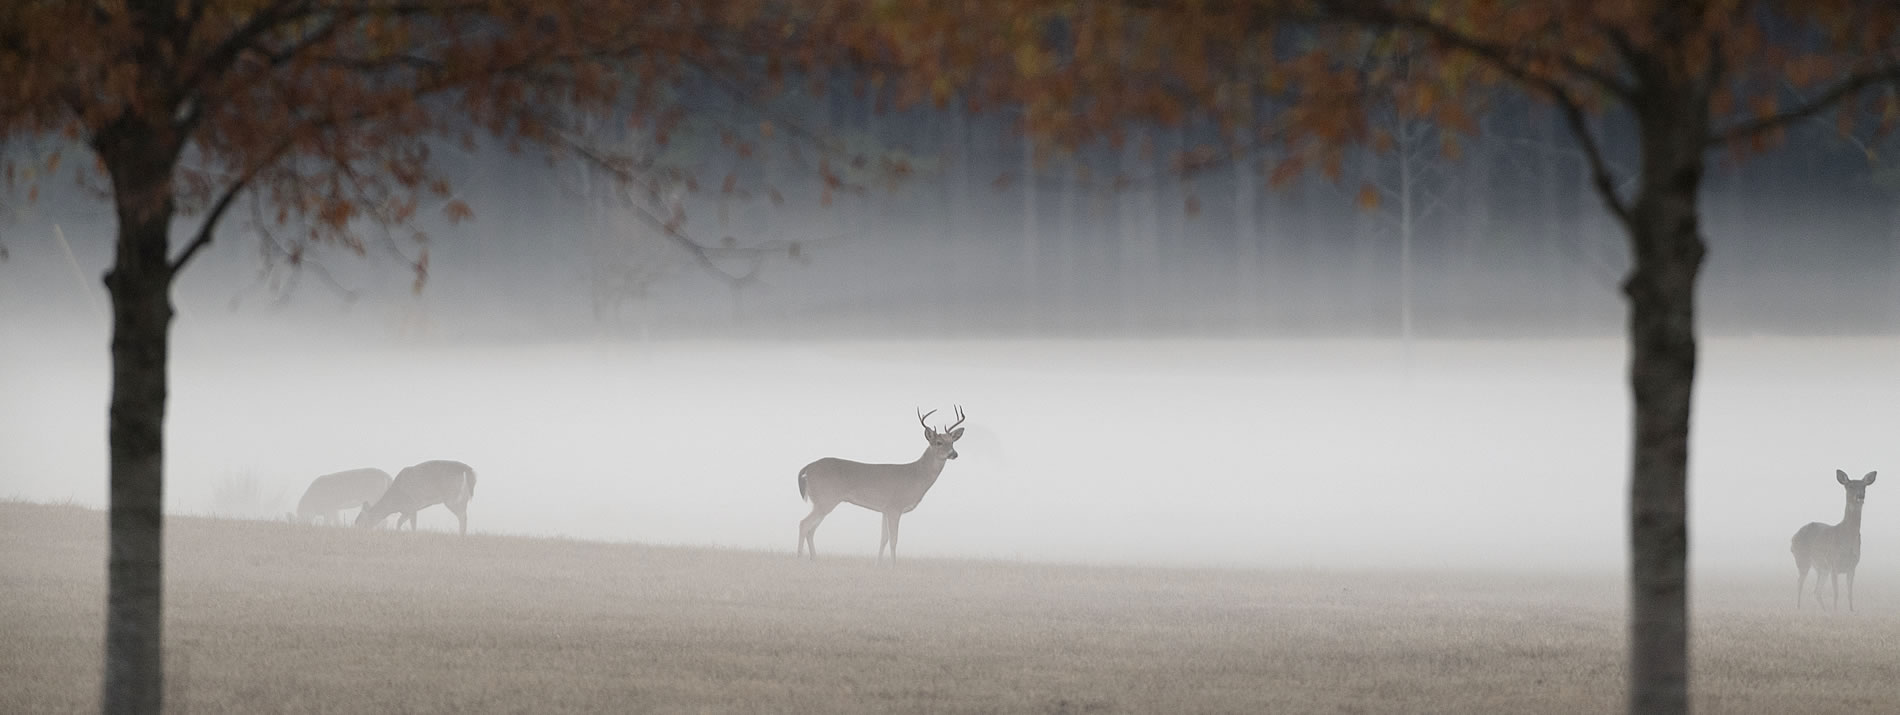 four deer in a foggy field